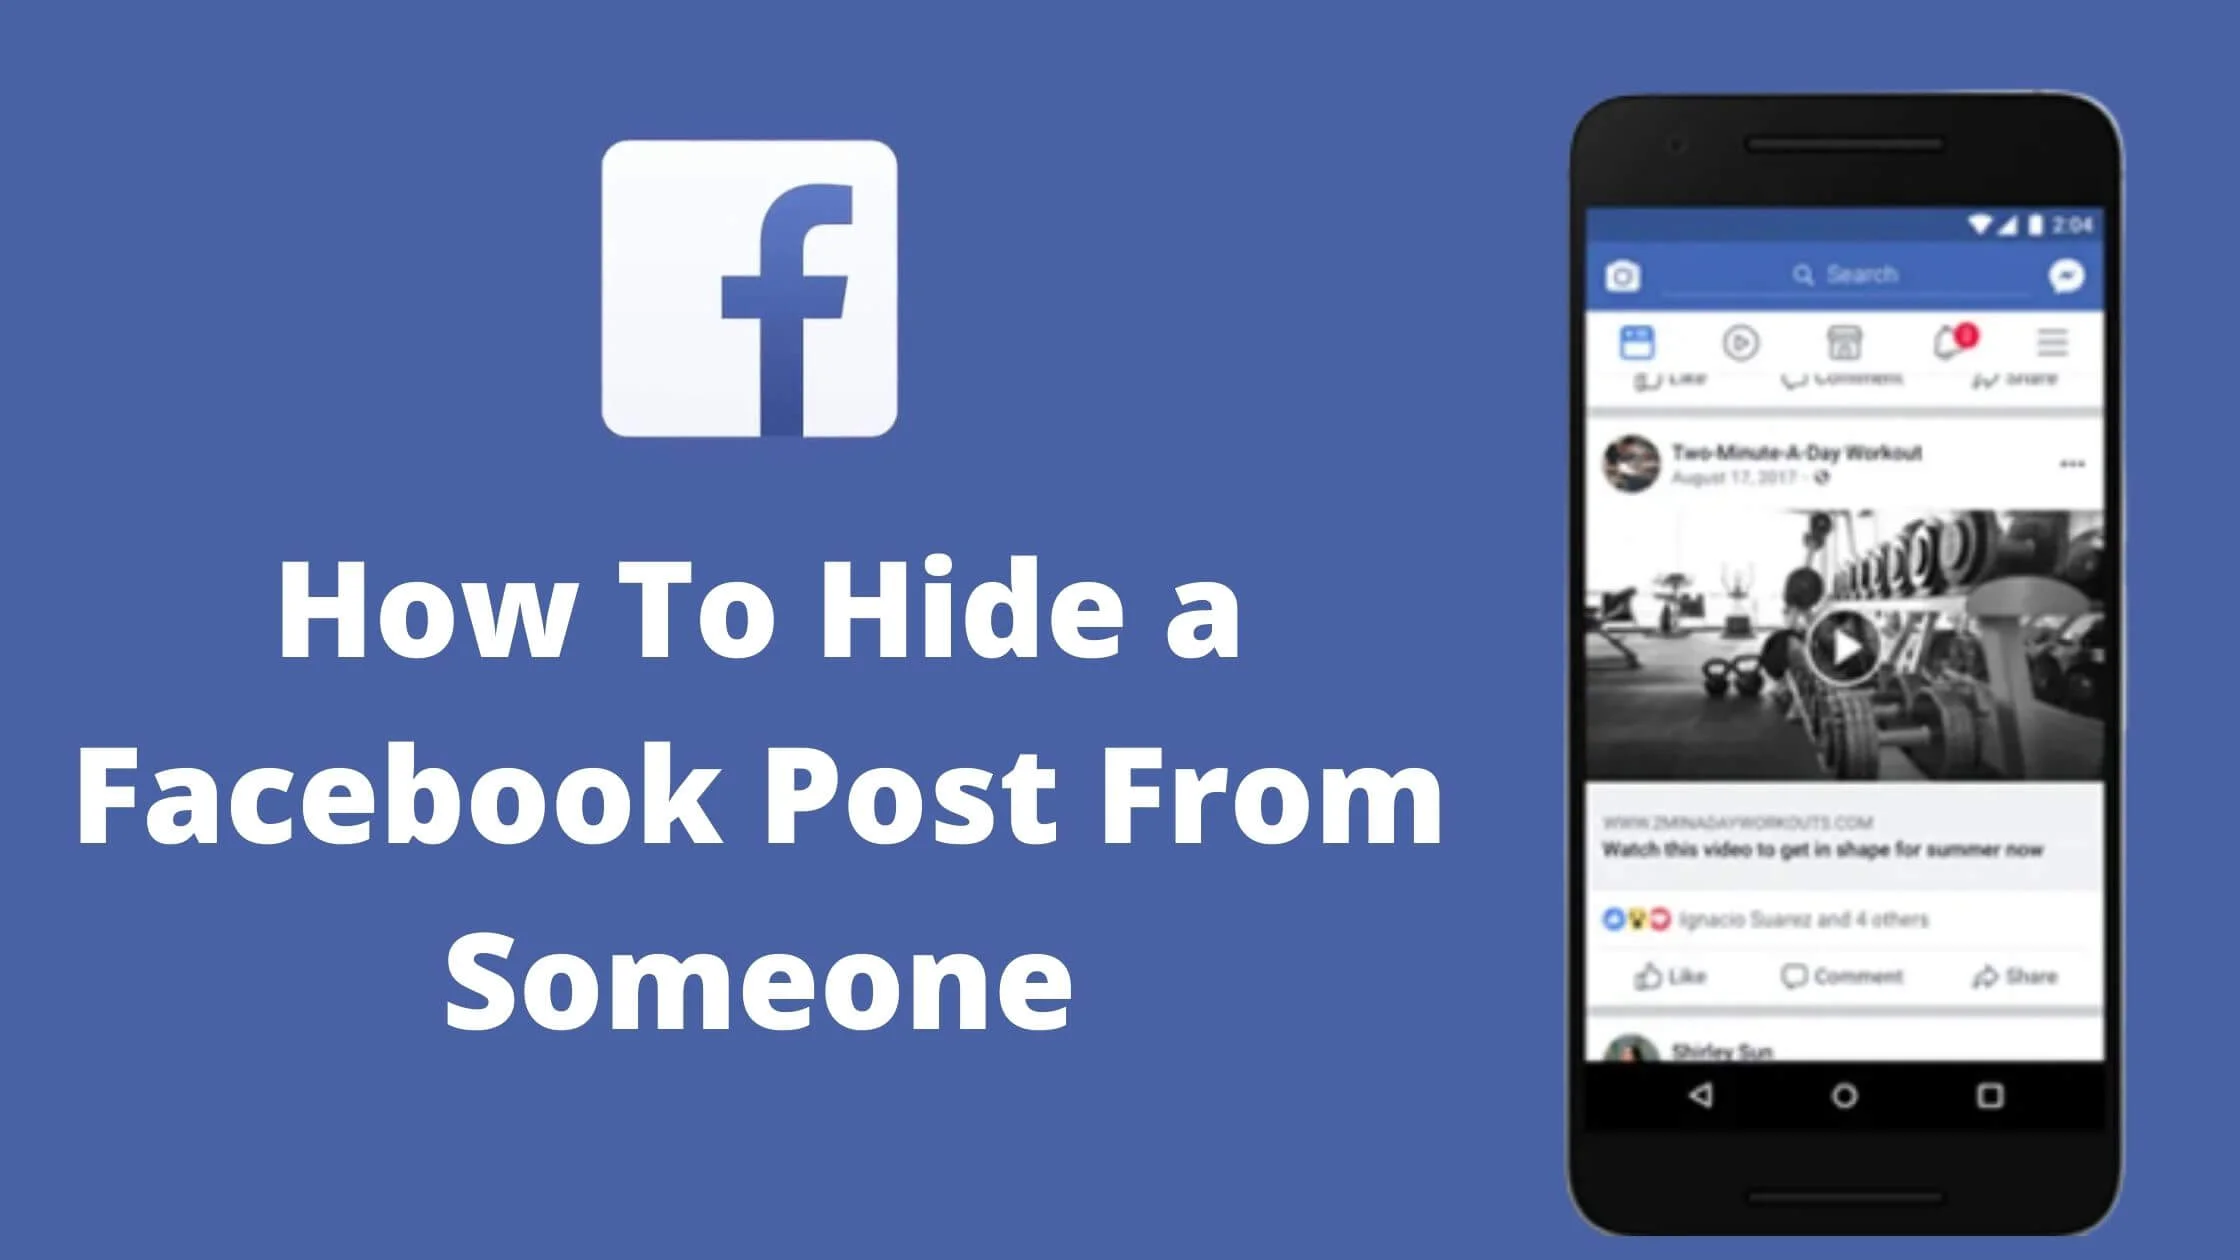 Hide a Facebook Post